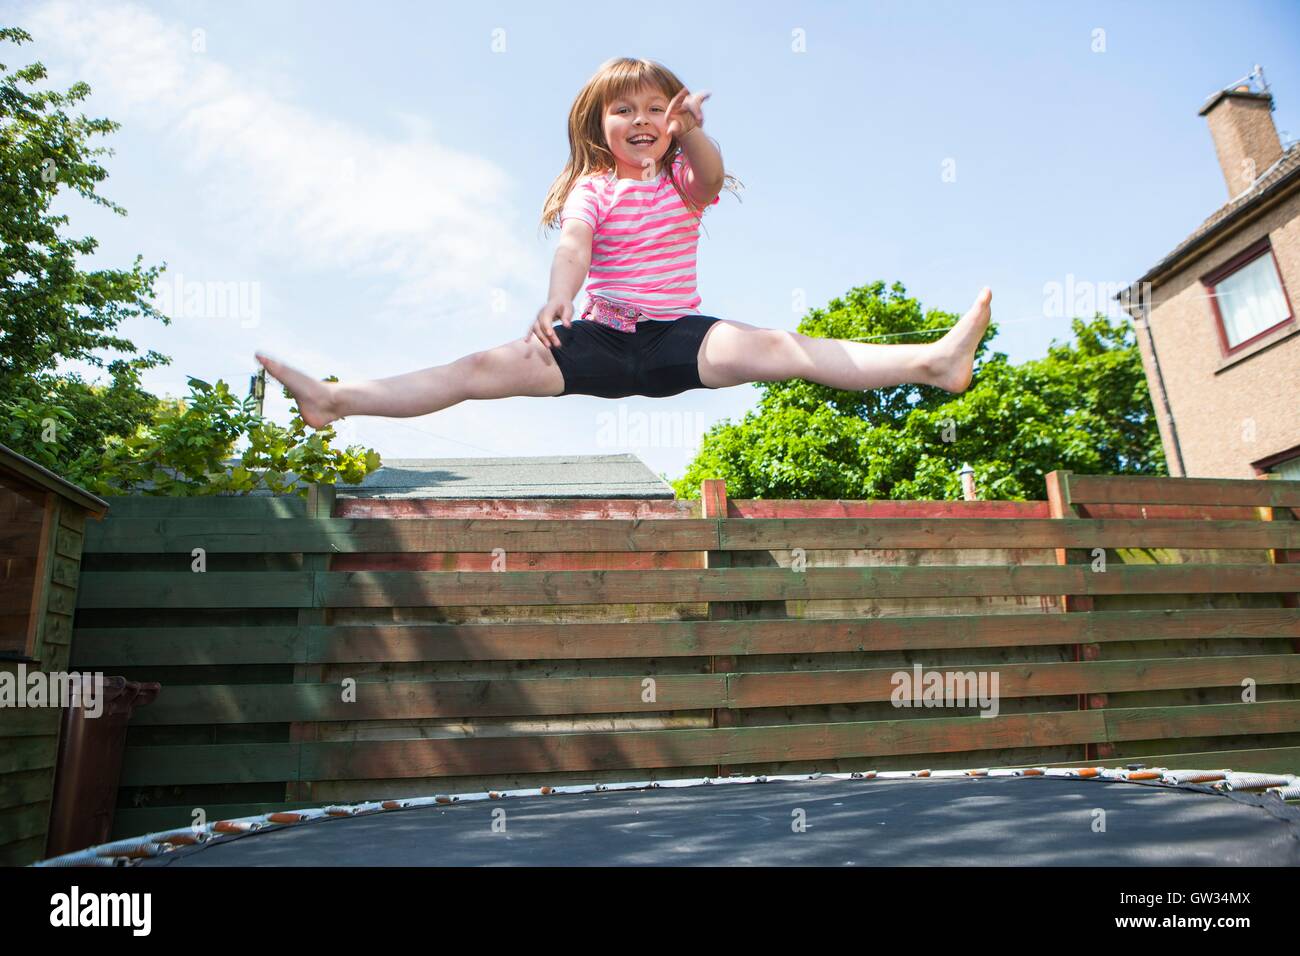 -MODELL VERÖFFENTLICHT. Junges Mädchen auf dem Trampolin. 8 Jahre altes Mädchen springen in der Luft während des Spielens auf einem Trampolin im Garten. Stockfoto